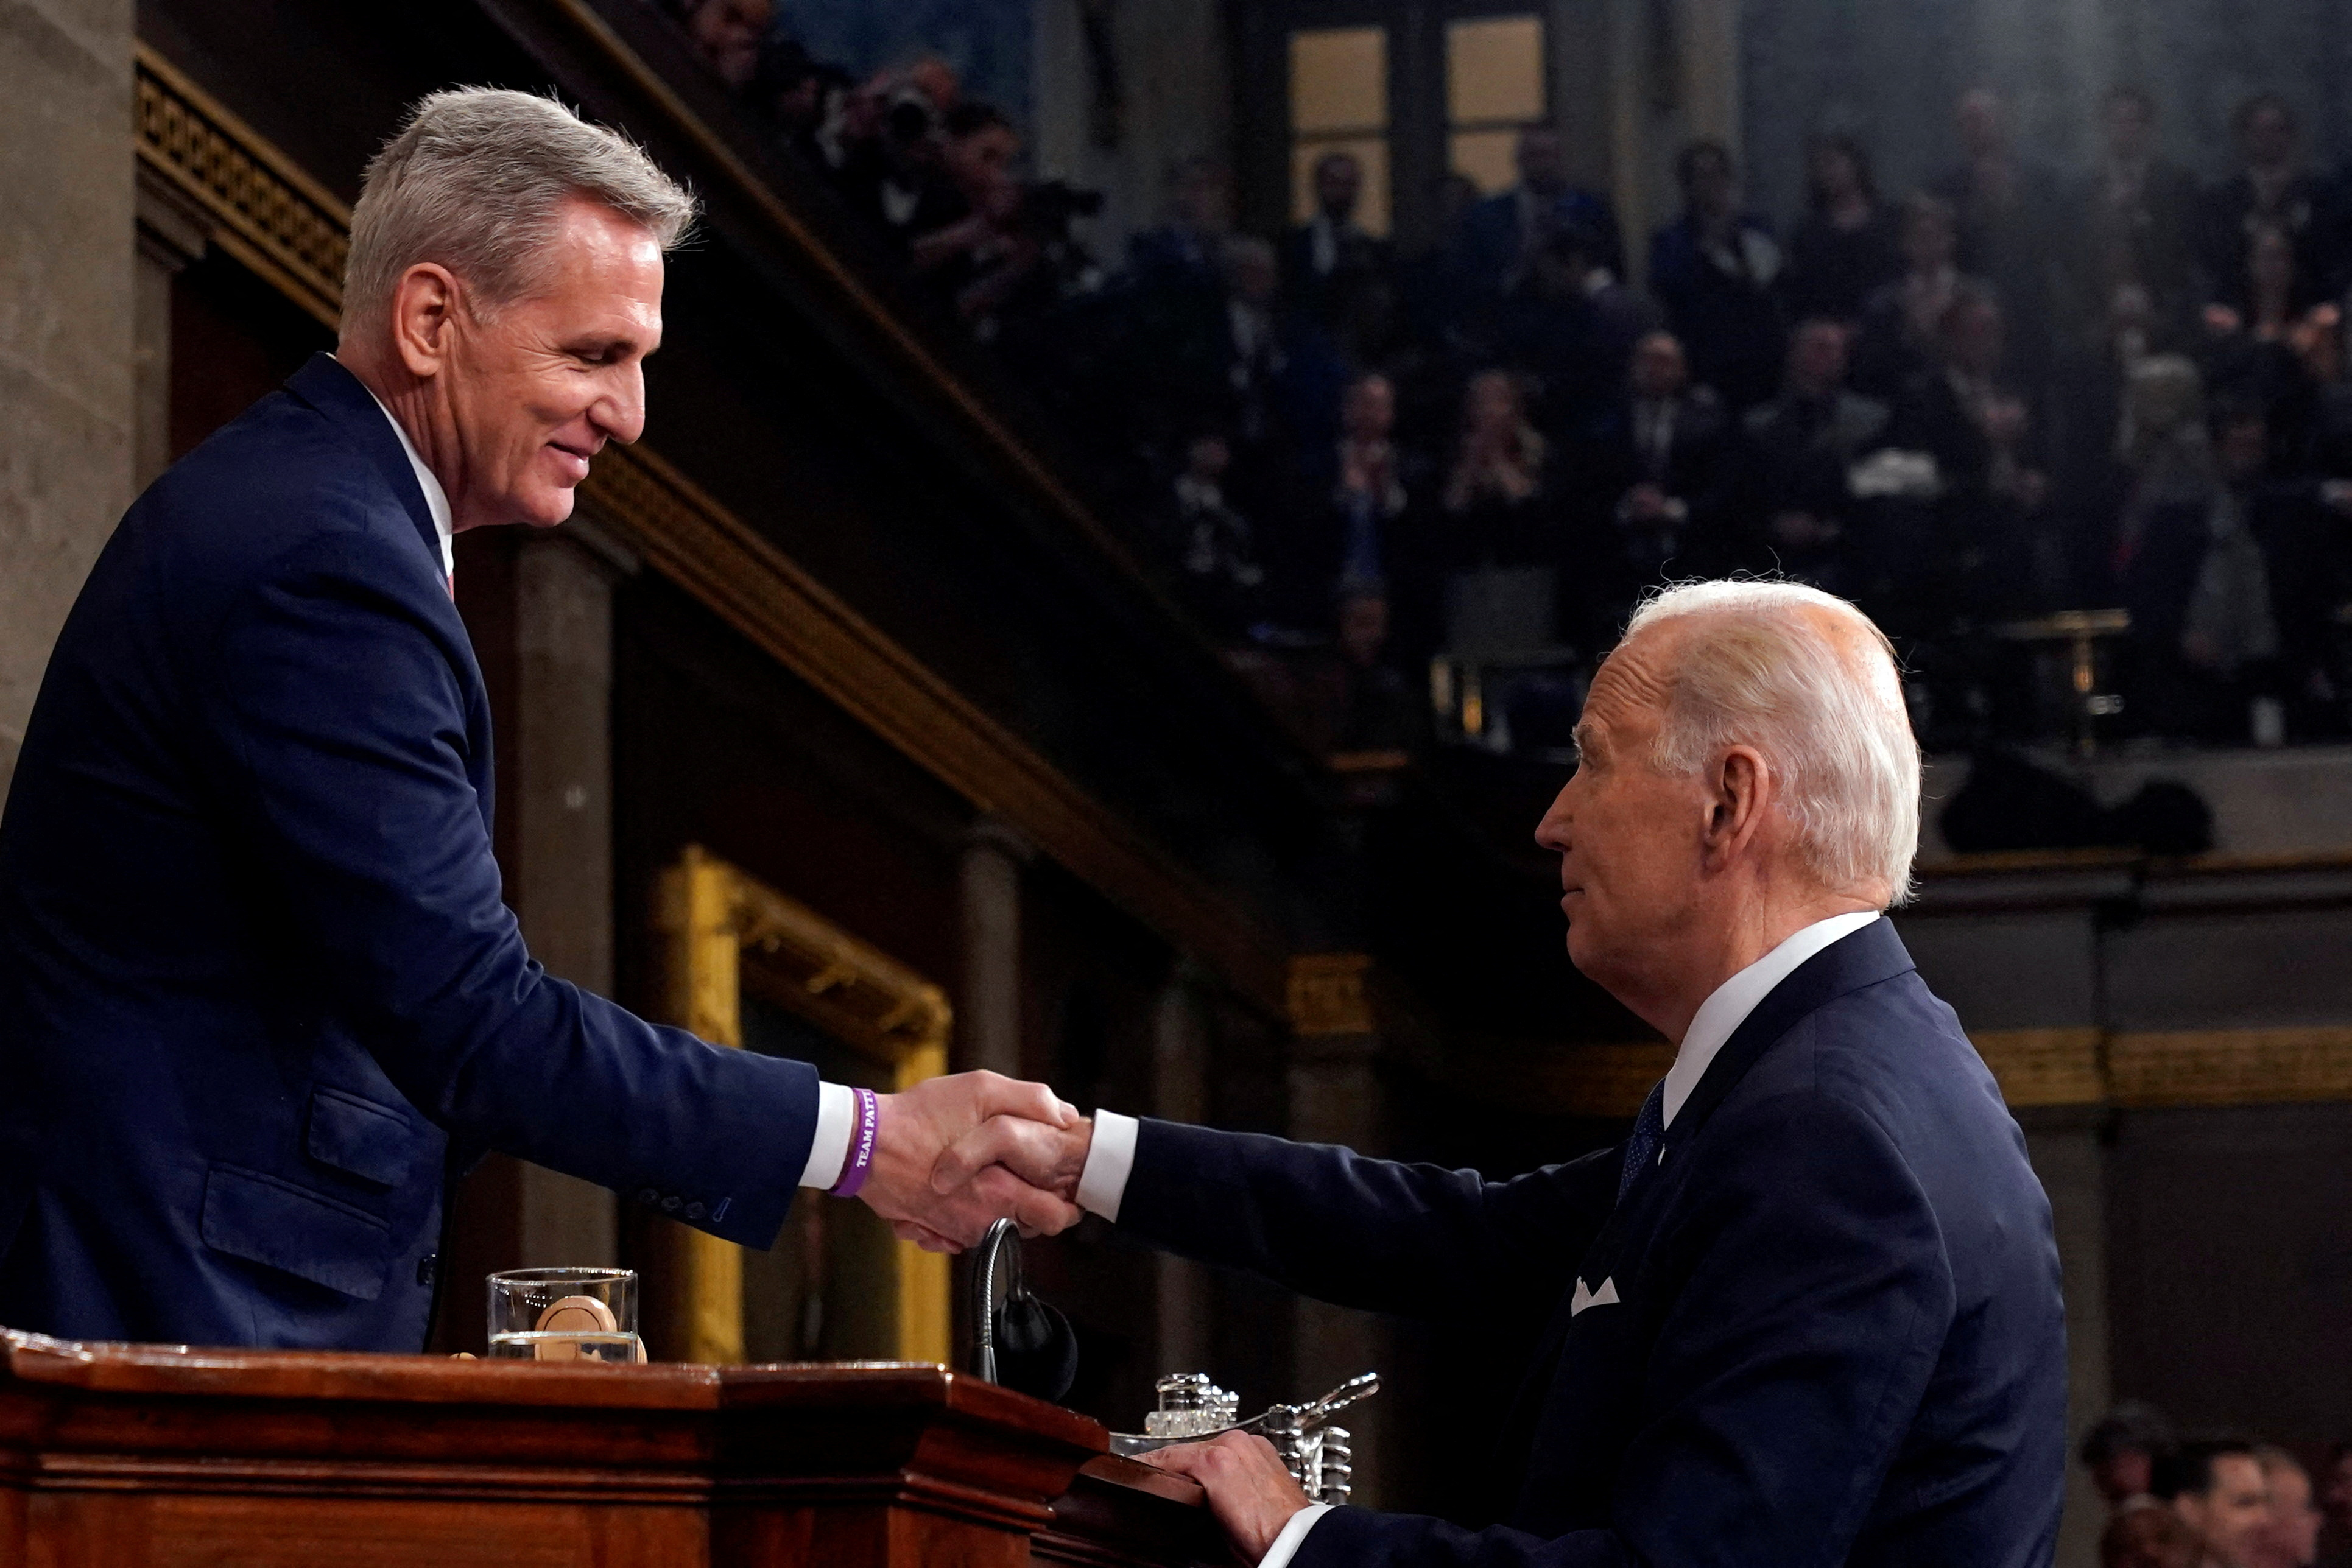 FOTO DE ARCHIVO: El presidente Joe Biden le da la mano al presidente de la Cámara de Representantes, Kevin McCarthy (Jacquelyn Martin/Piscina vía REUTERS)
